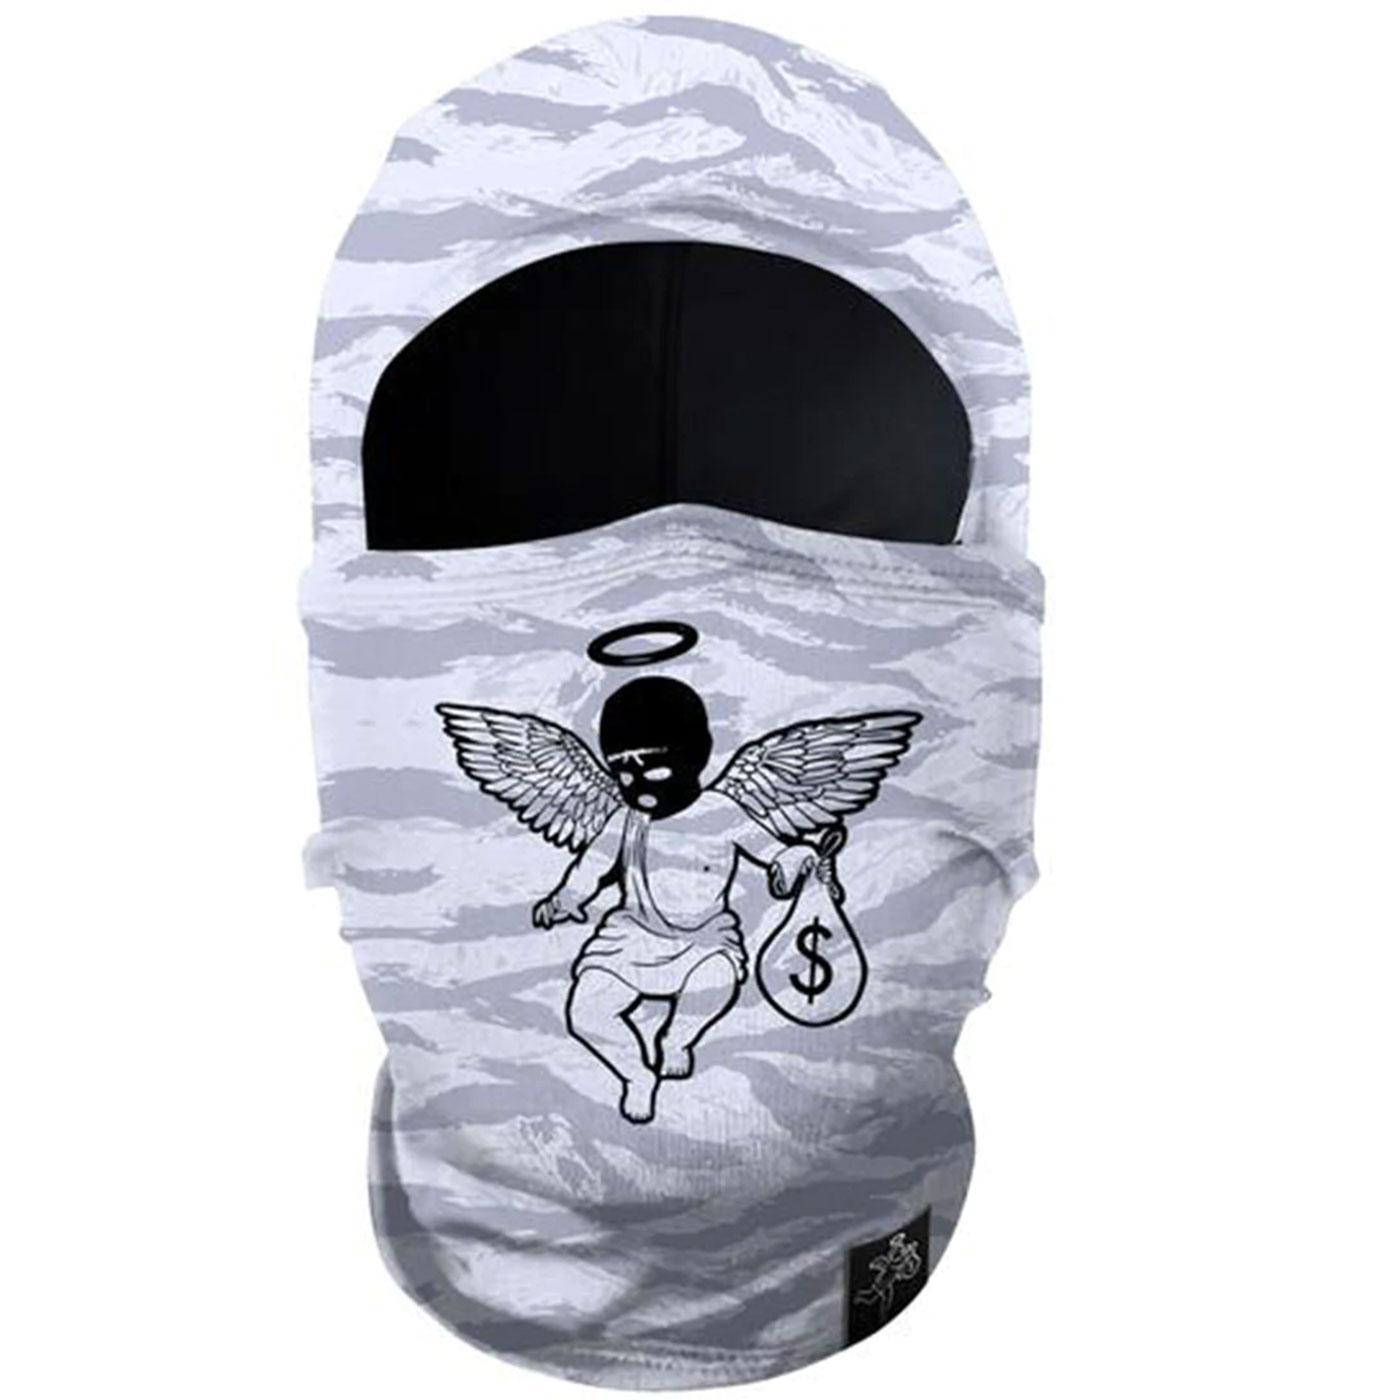 Gangster ski mask white color Hyperwarm Hood Balaclava Full Face Ski Mask